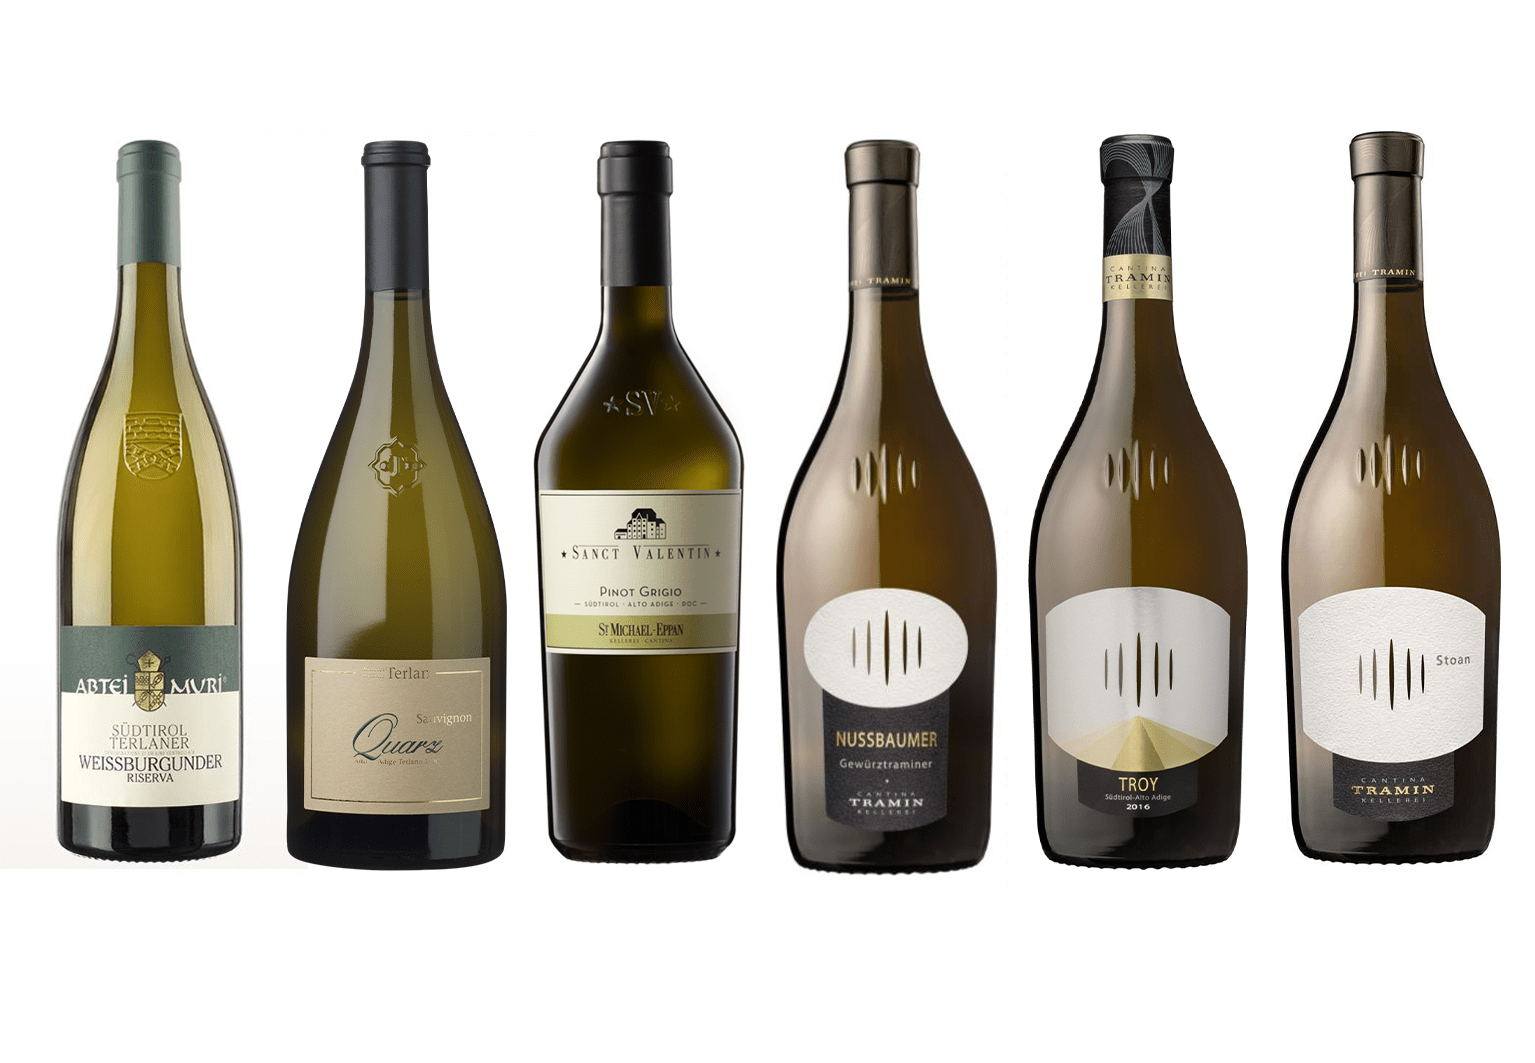 Best of South Tyrol - white: Chardonnay Troy, Stoan, Sauvignon Quarz, Weißburgunder Abtei Muri, Pinot Grigio St. Valentin, Gewürztraminer Nussbaumer